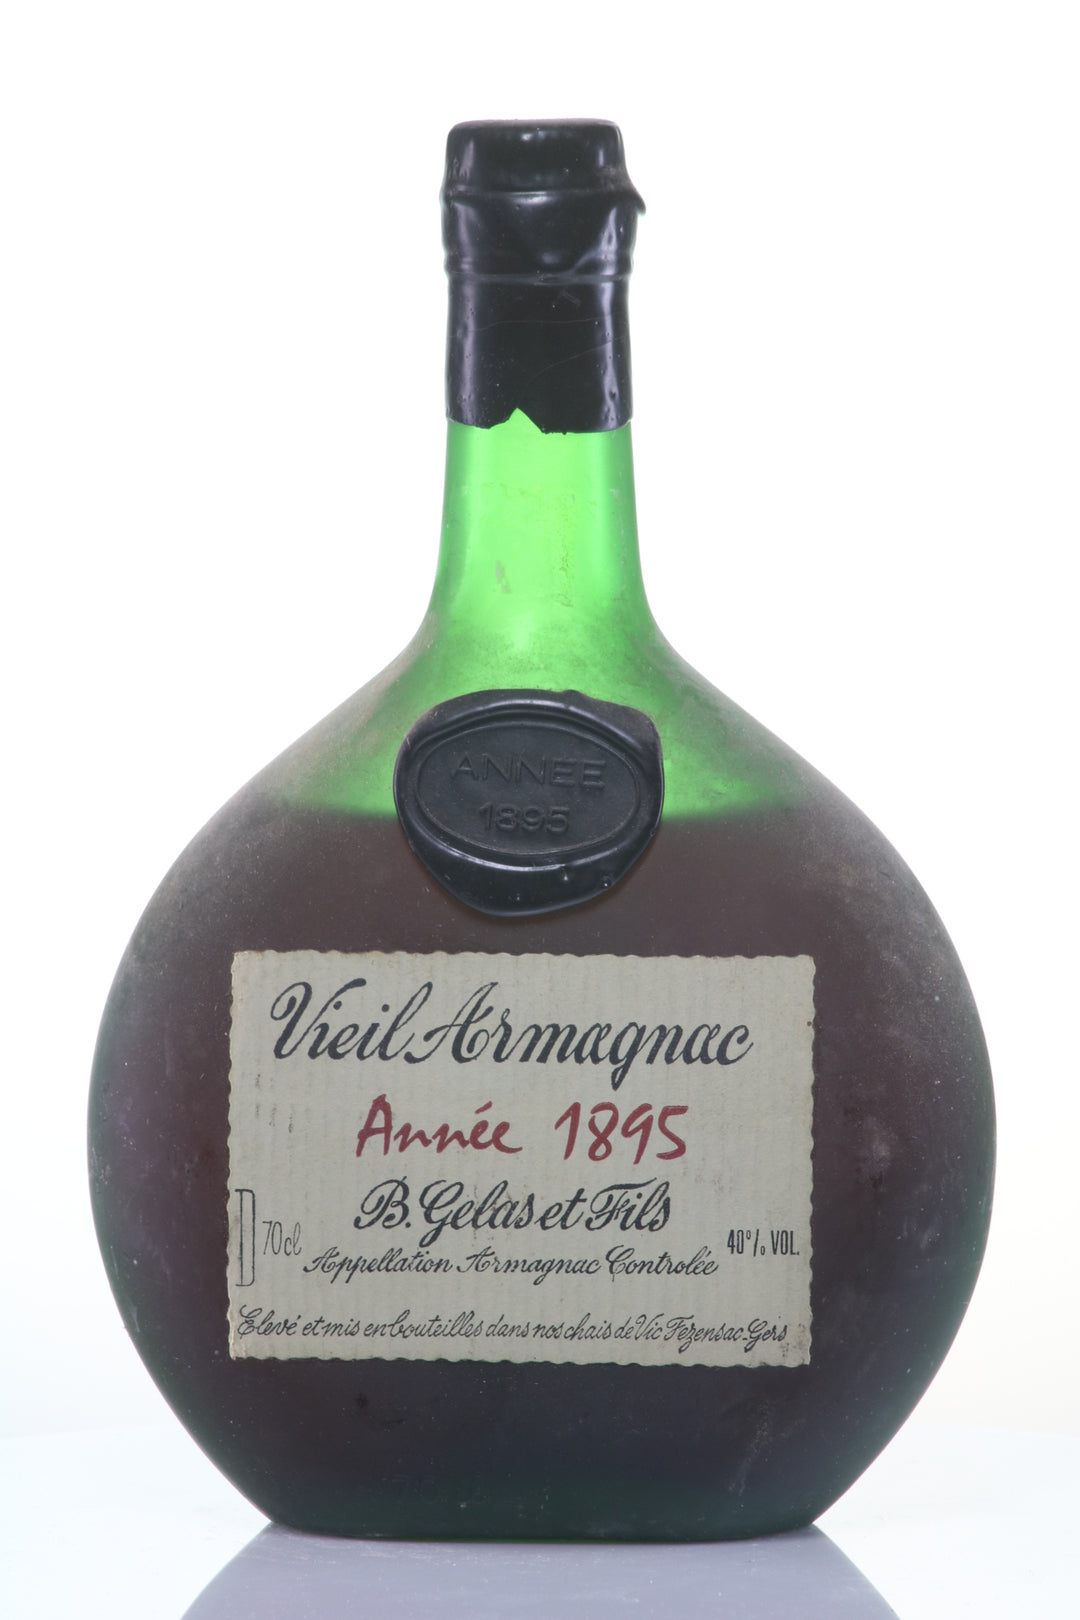 Gelas & Fils 1895 Vieil Armagnac Basquaise Barrel Aged - Rue Pinard